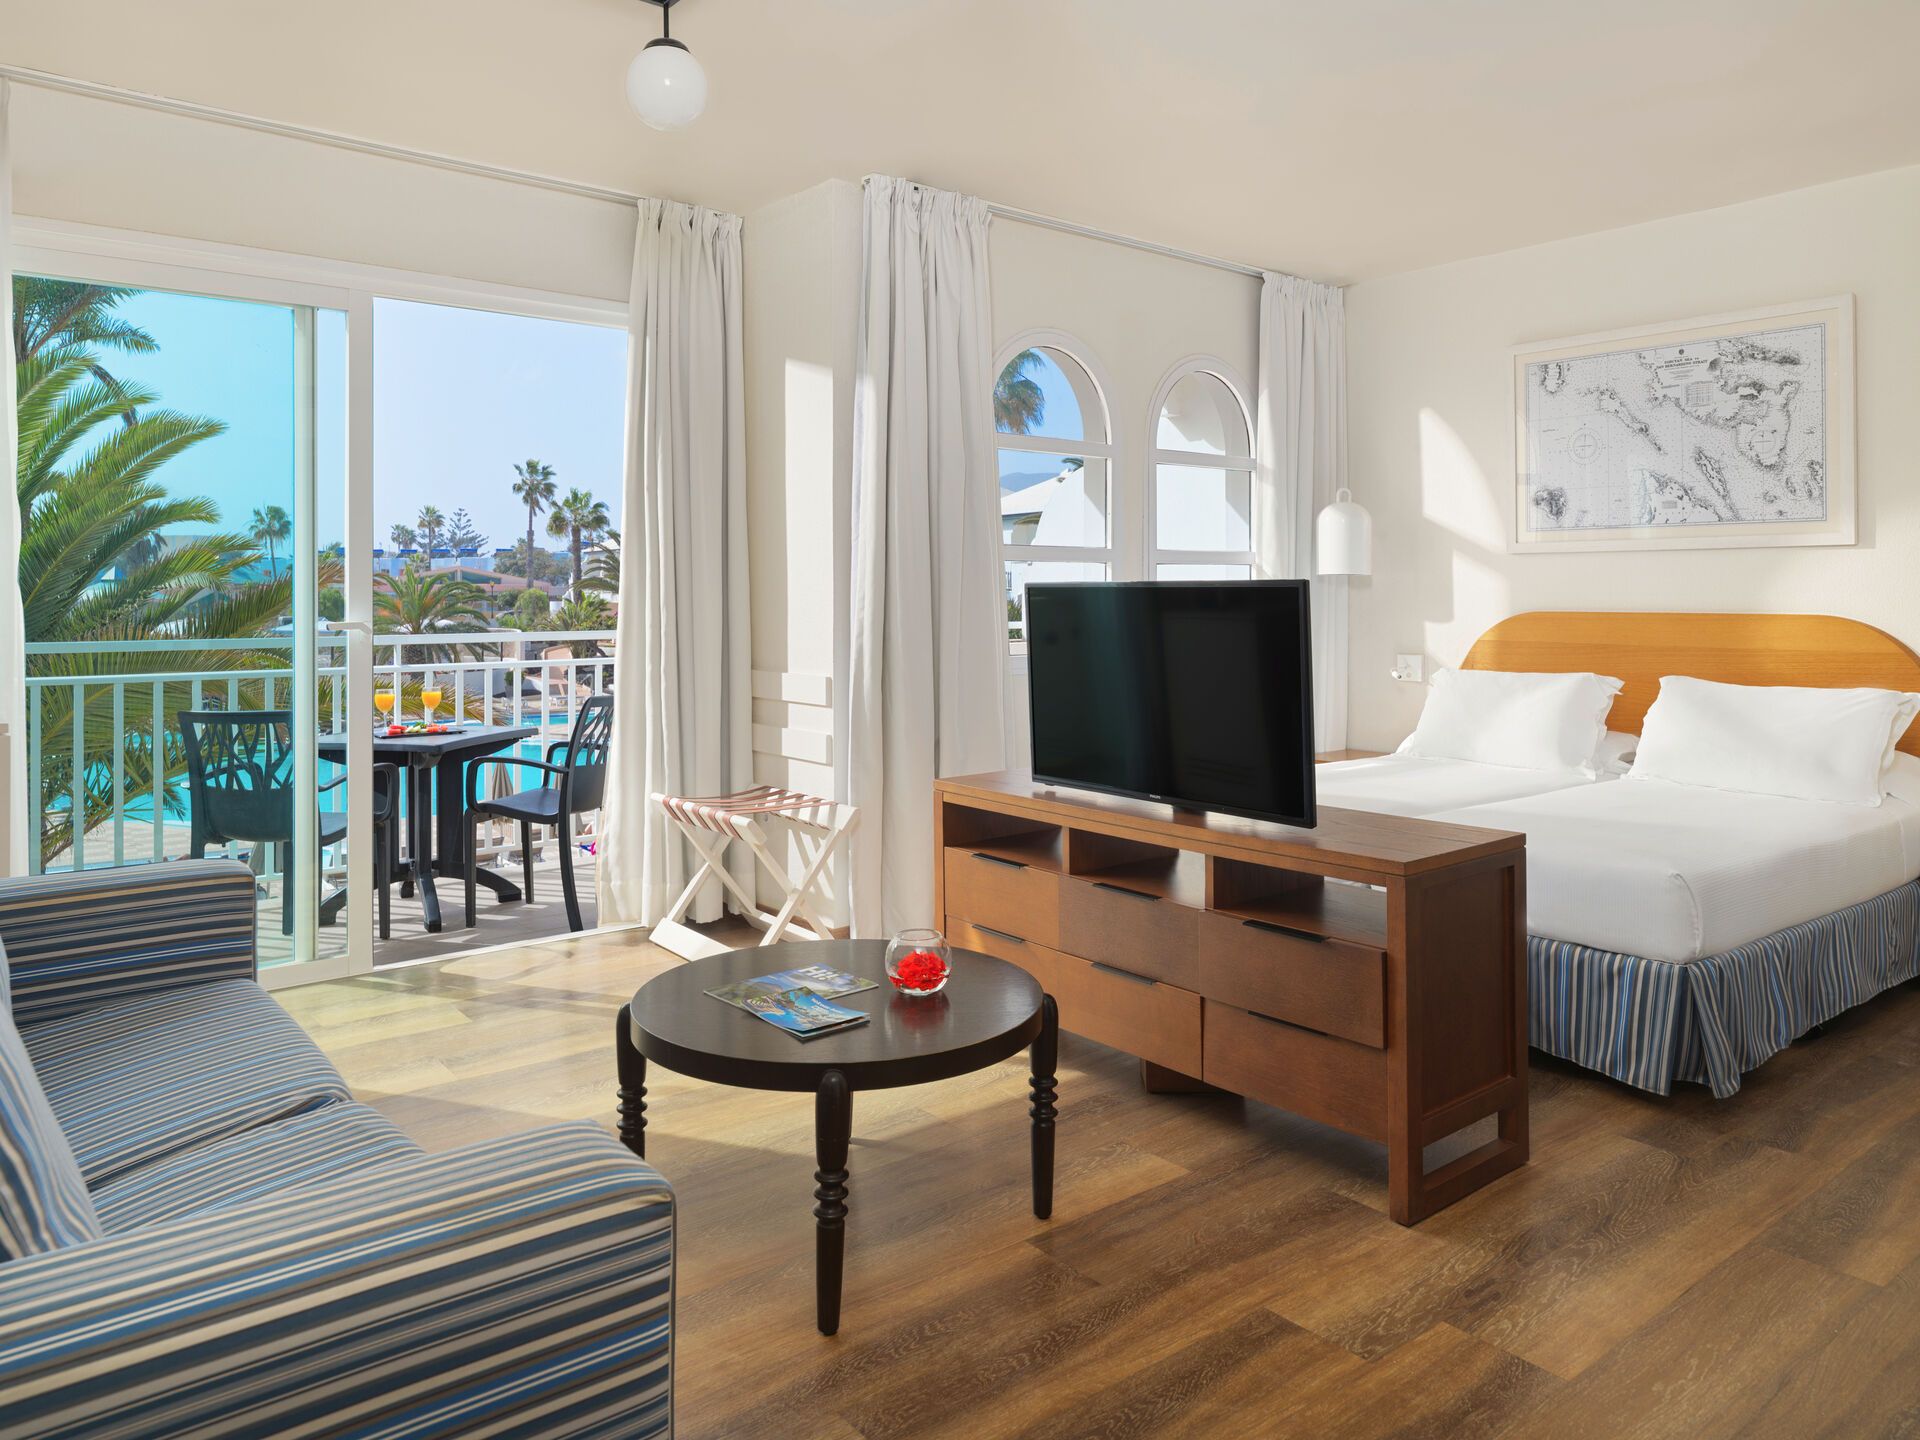 Canaries - Fuerteventura - Espagne - Hotel H10 Ocean Suites 4*